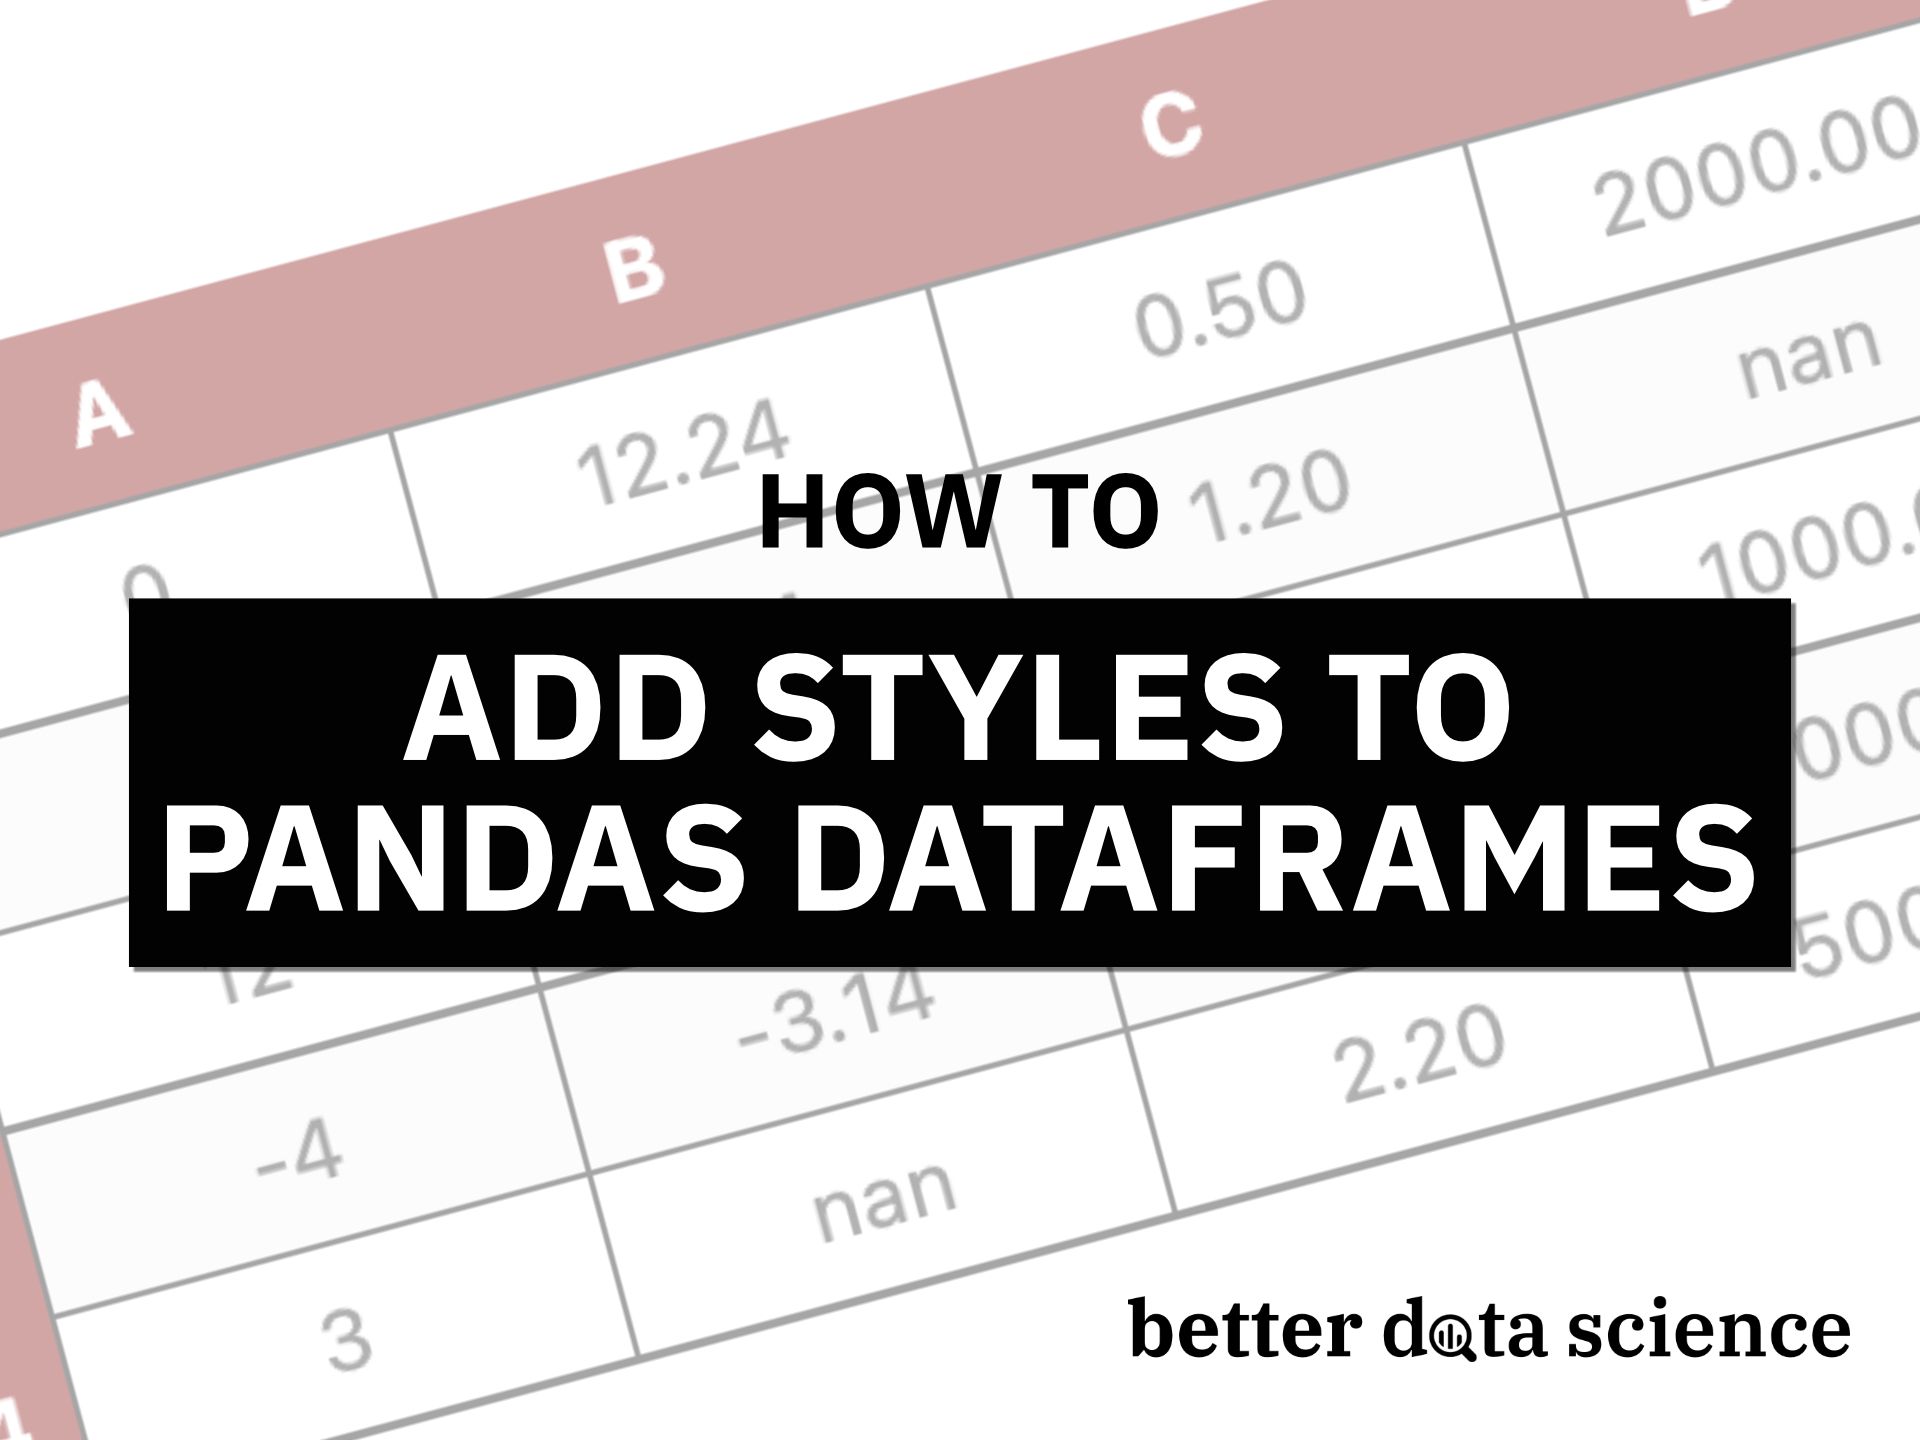 Bạn thích làm việc với dữ liệu và muốn tìm cách để quản lý chúng dễ dàng hơn? Hãy xem những hình ảnh liên quan đến Pandas DataFrames để hiểu thêm về công cụ hữu ích này.